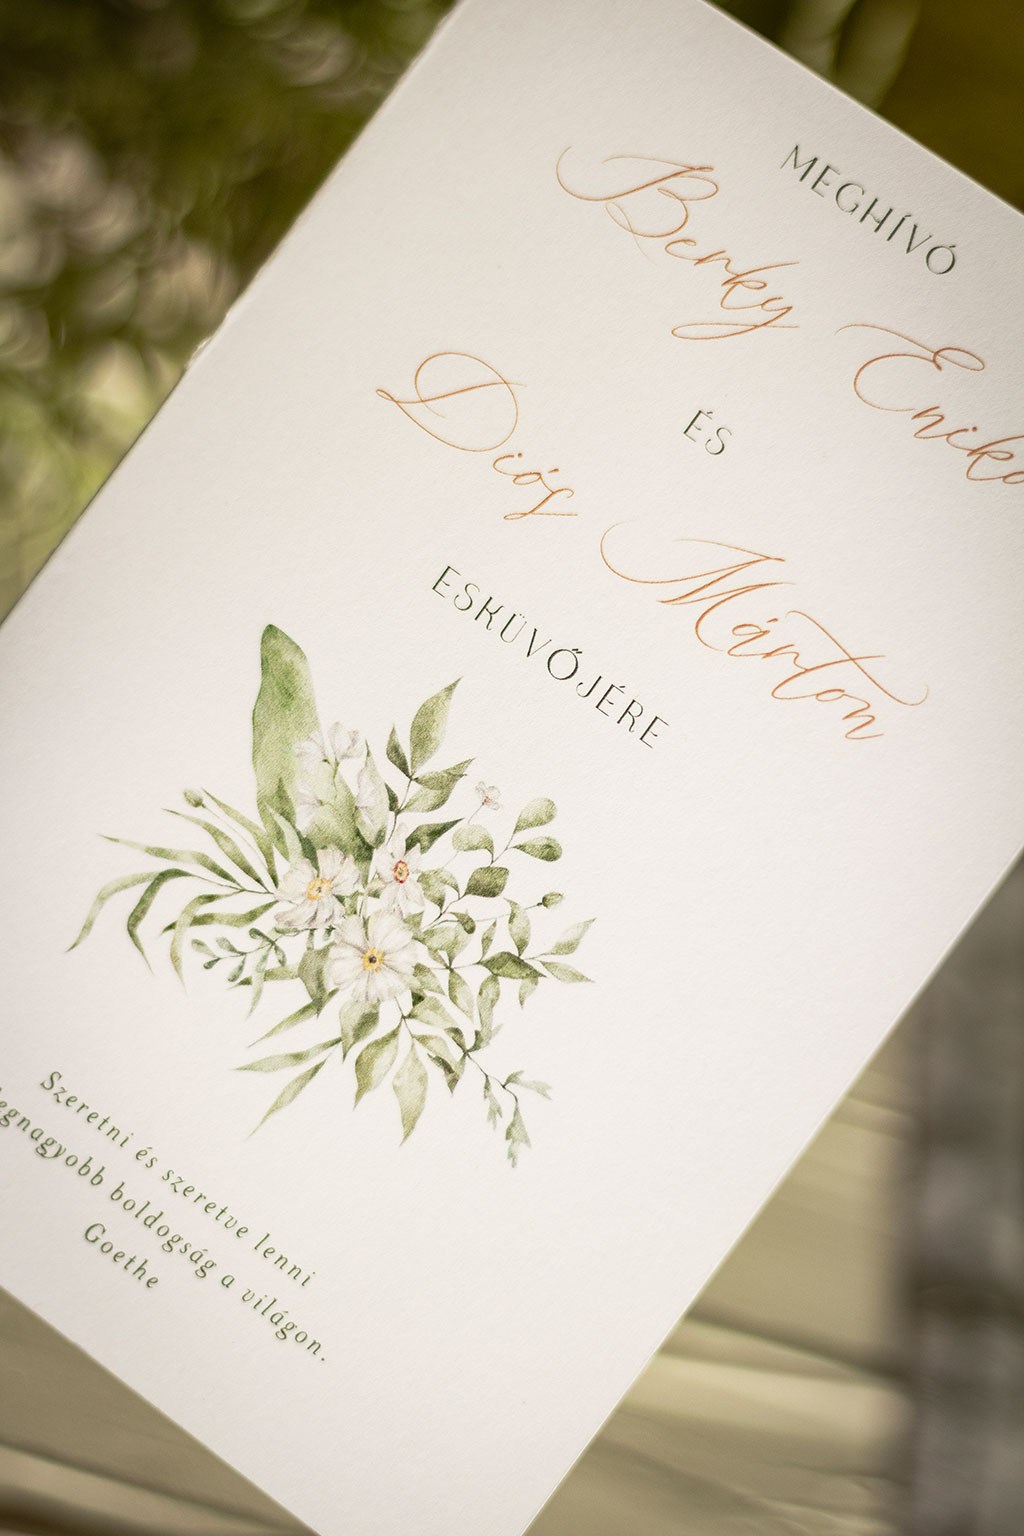 fehér virágos esküvői meghívó hatféle választható formátumban, 2, 3 és 4 oldalas változatokban, fehér, krém vagy kraft papírra nyomtatva, kedvező áron